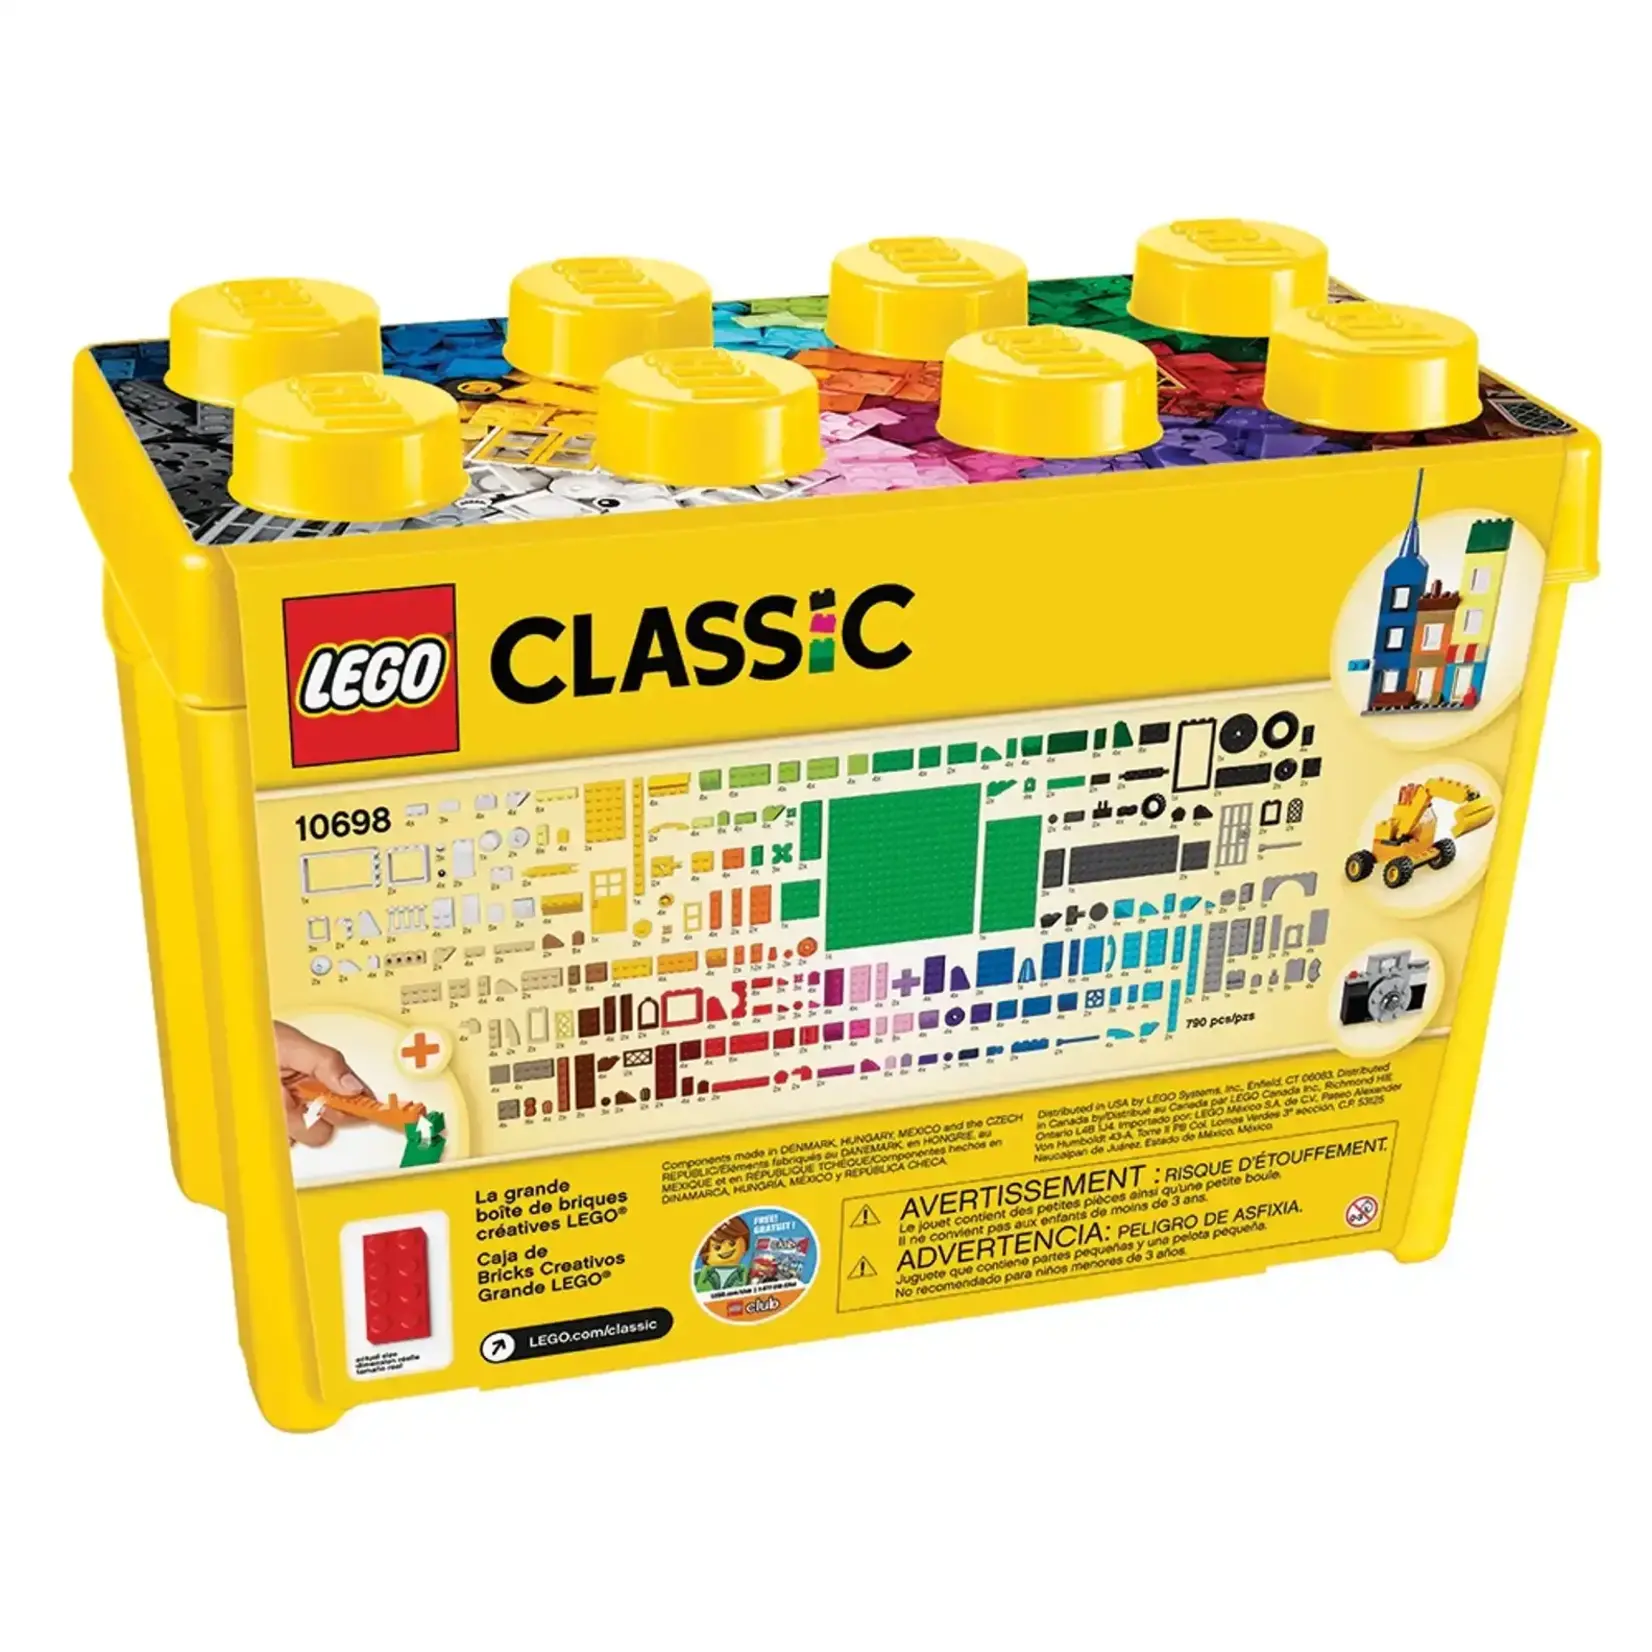 LEGO Large Creative Brick Box